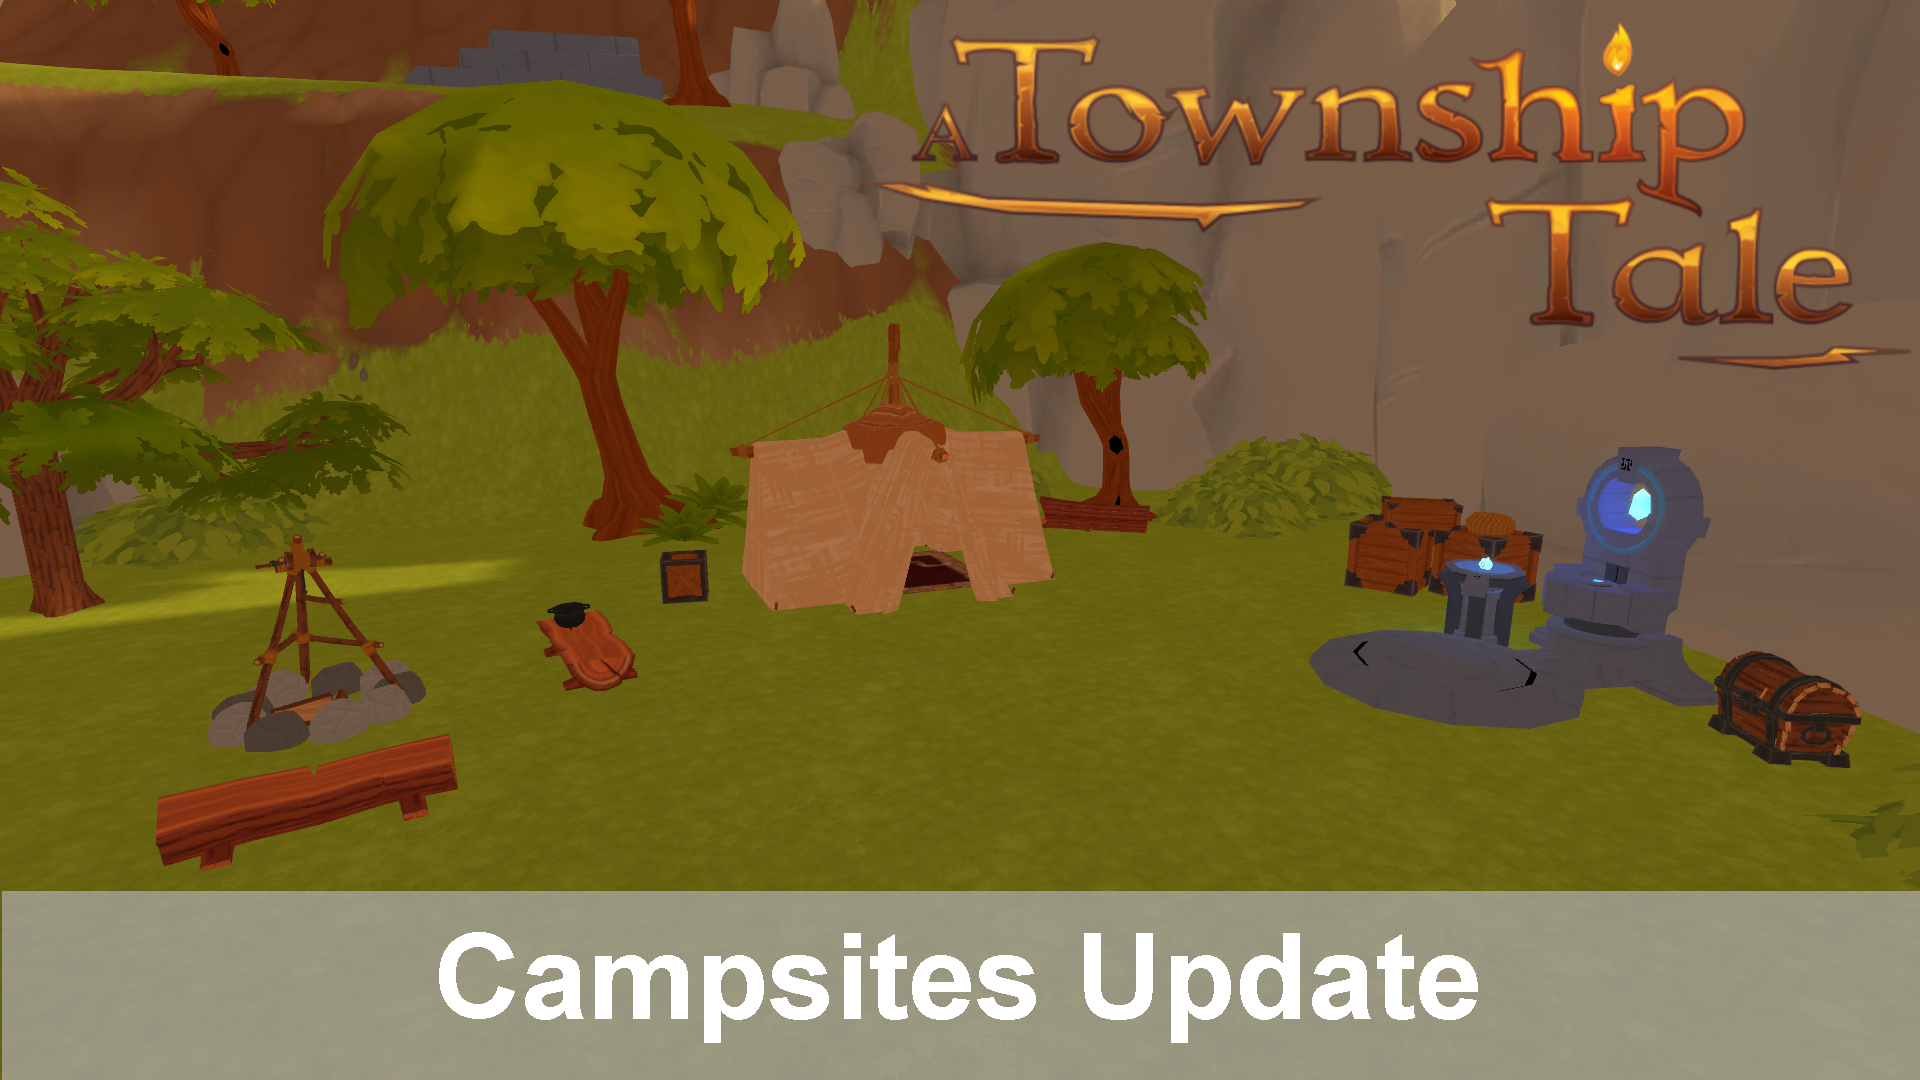 Update 1.7.0.0: Campsites